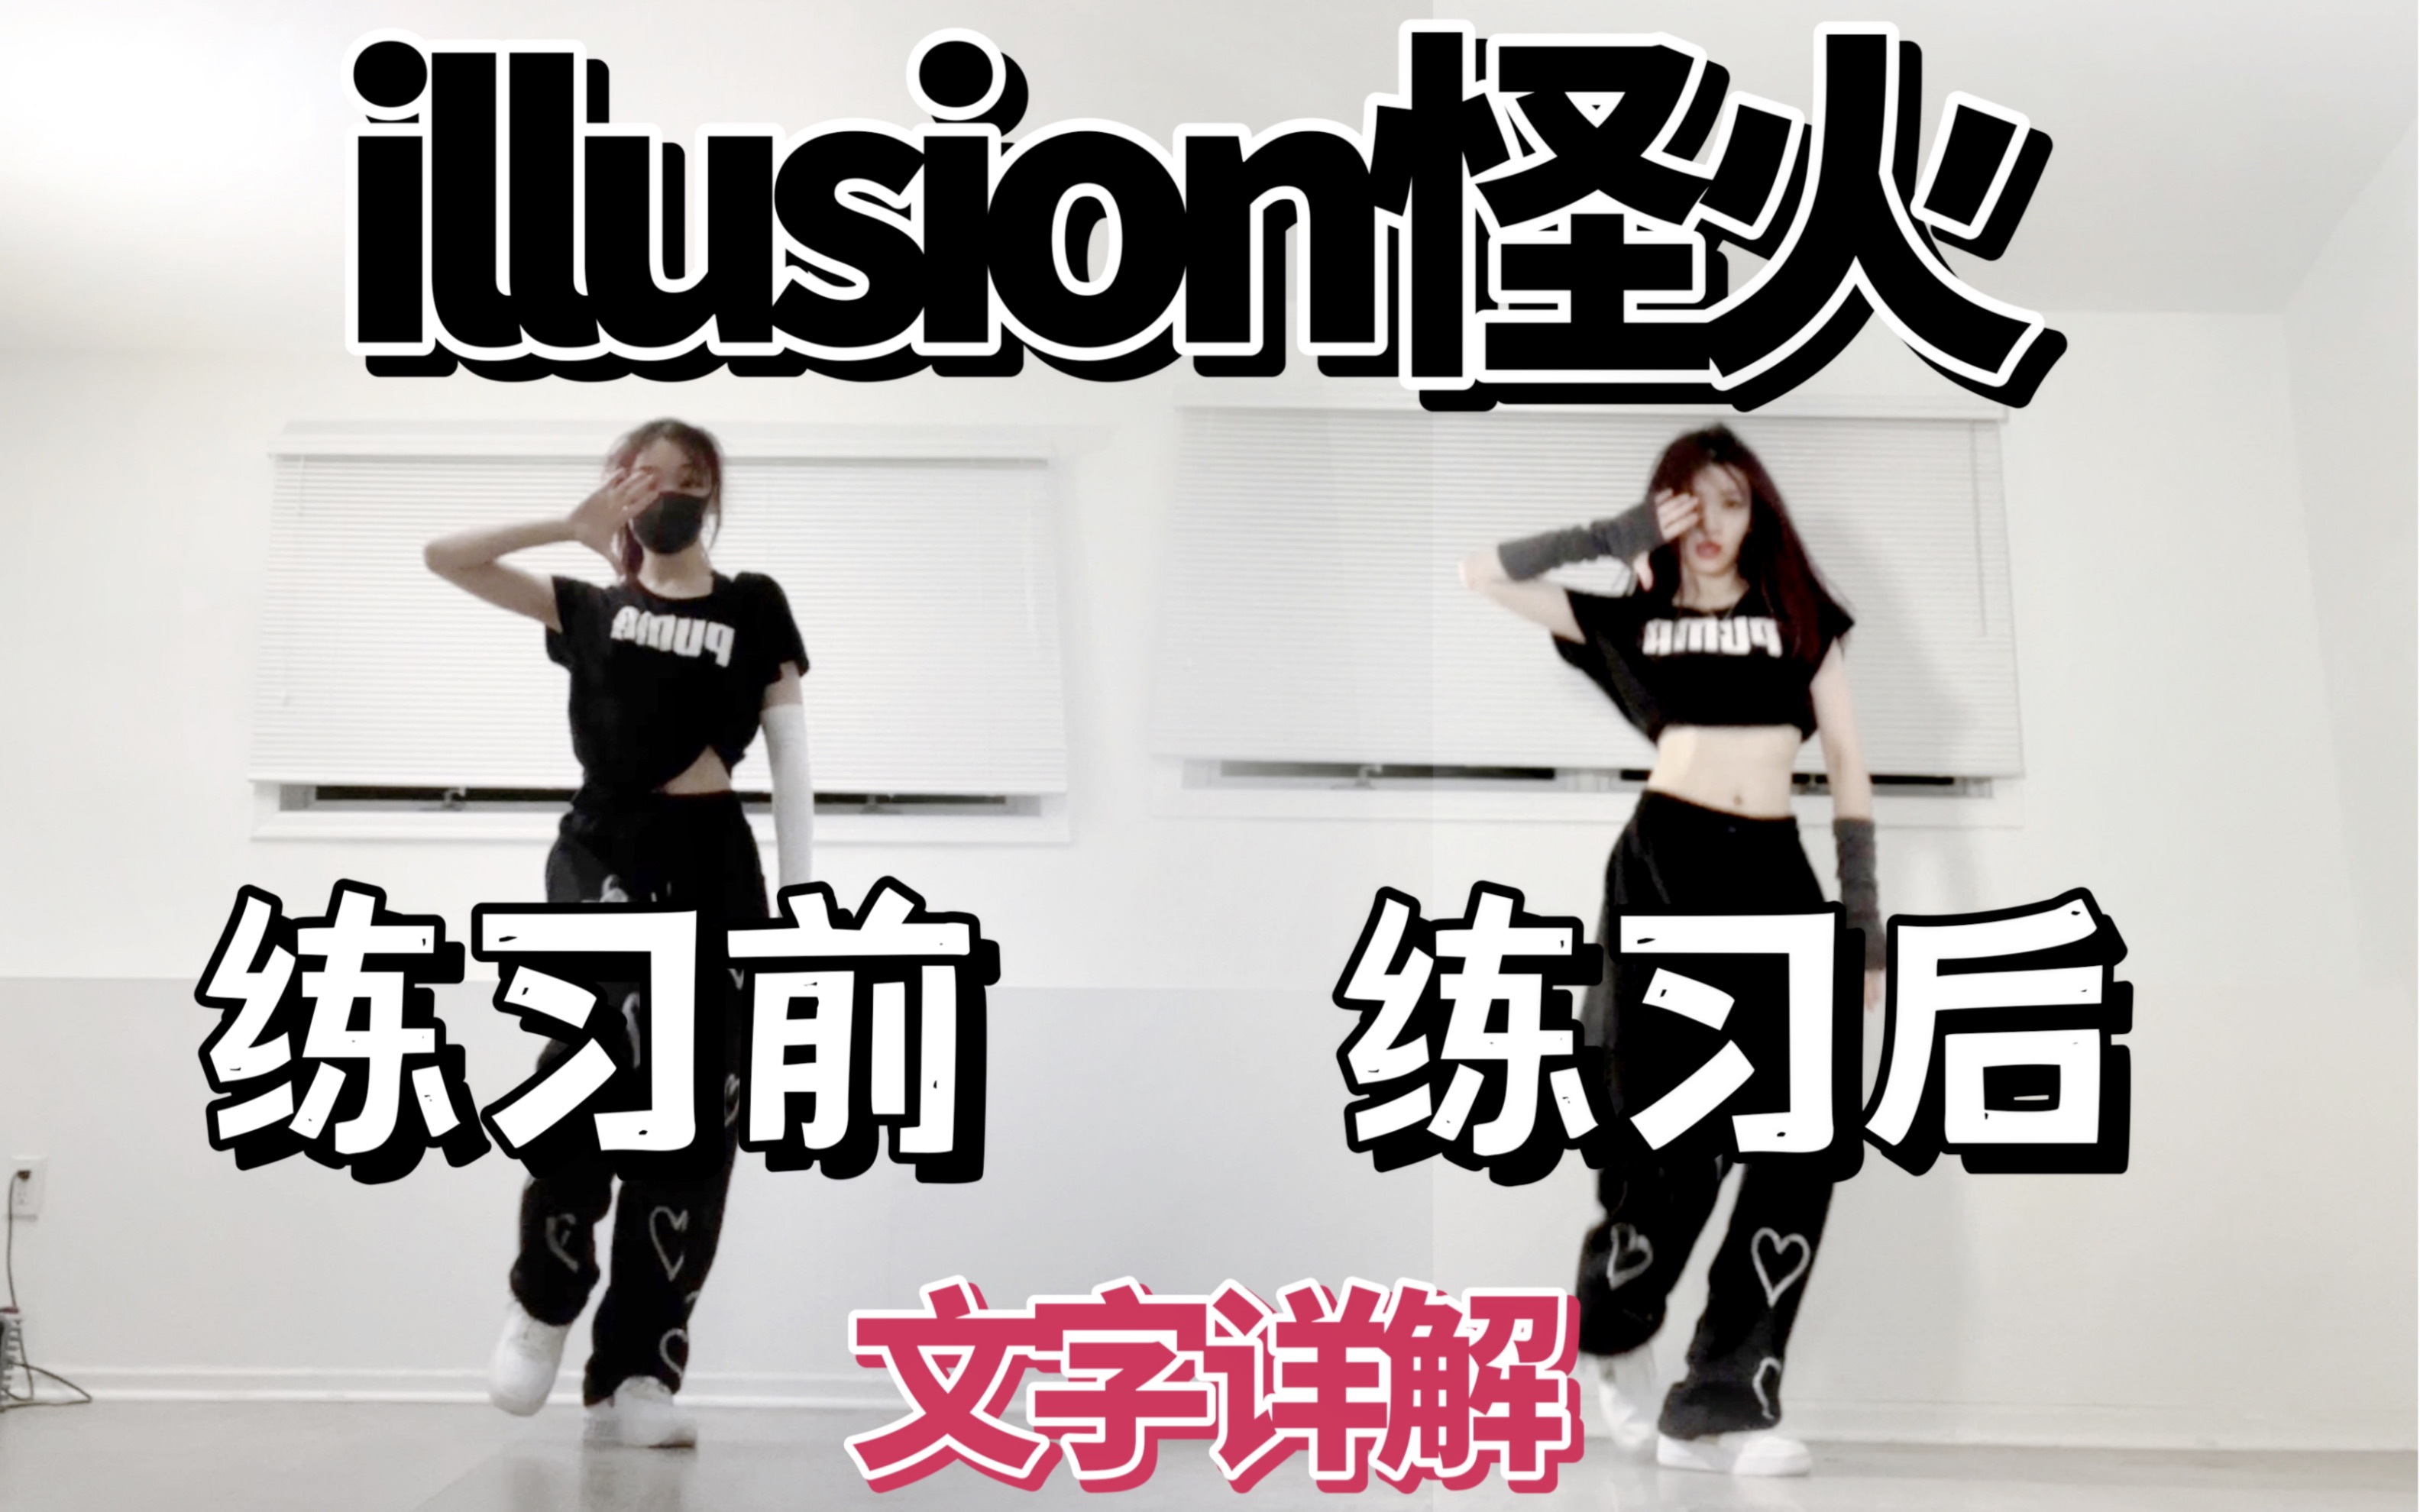 【陈阿悠】aespa-illusion怪火舞蹈细节对比